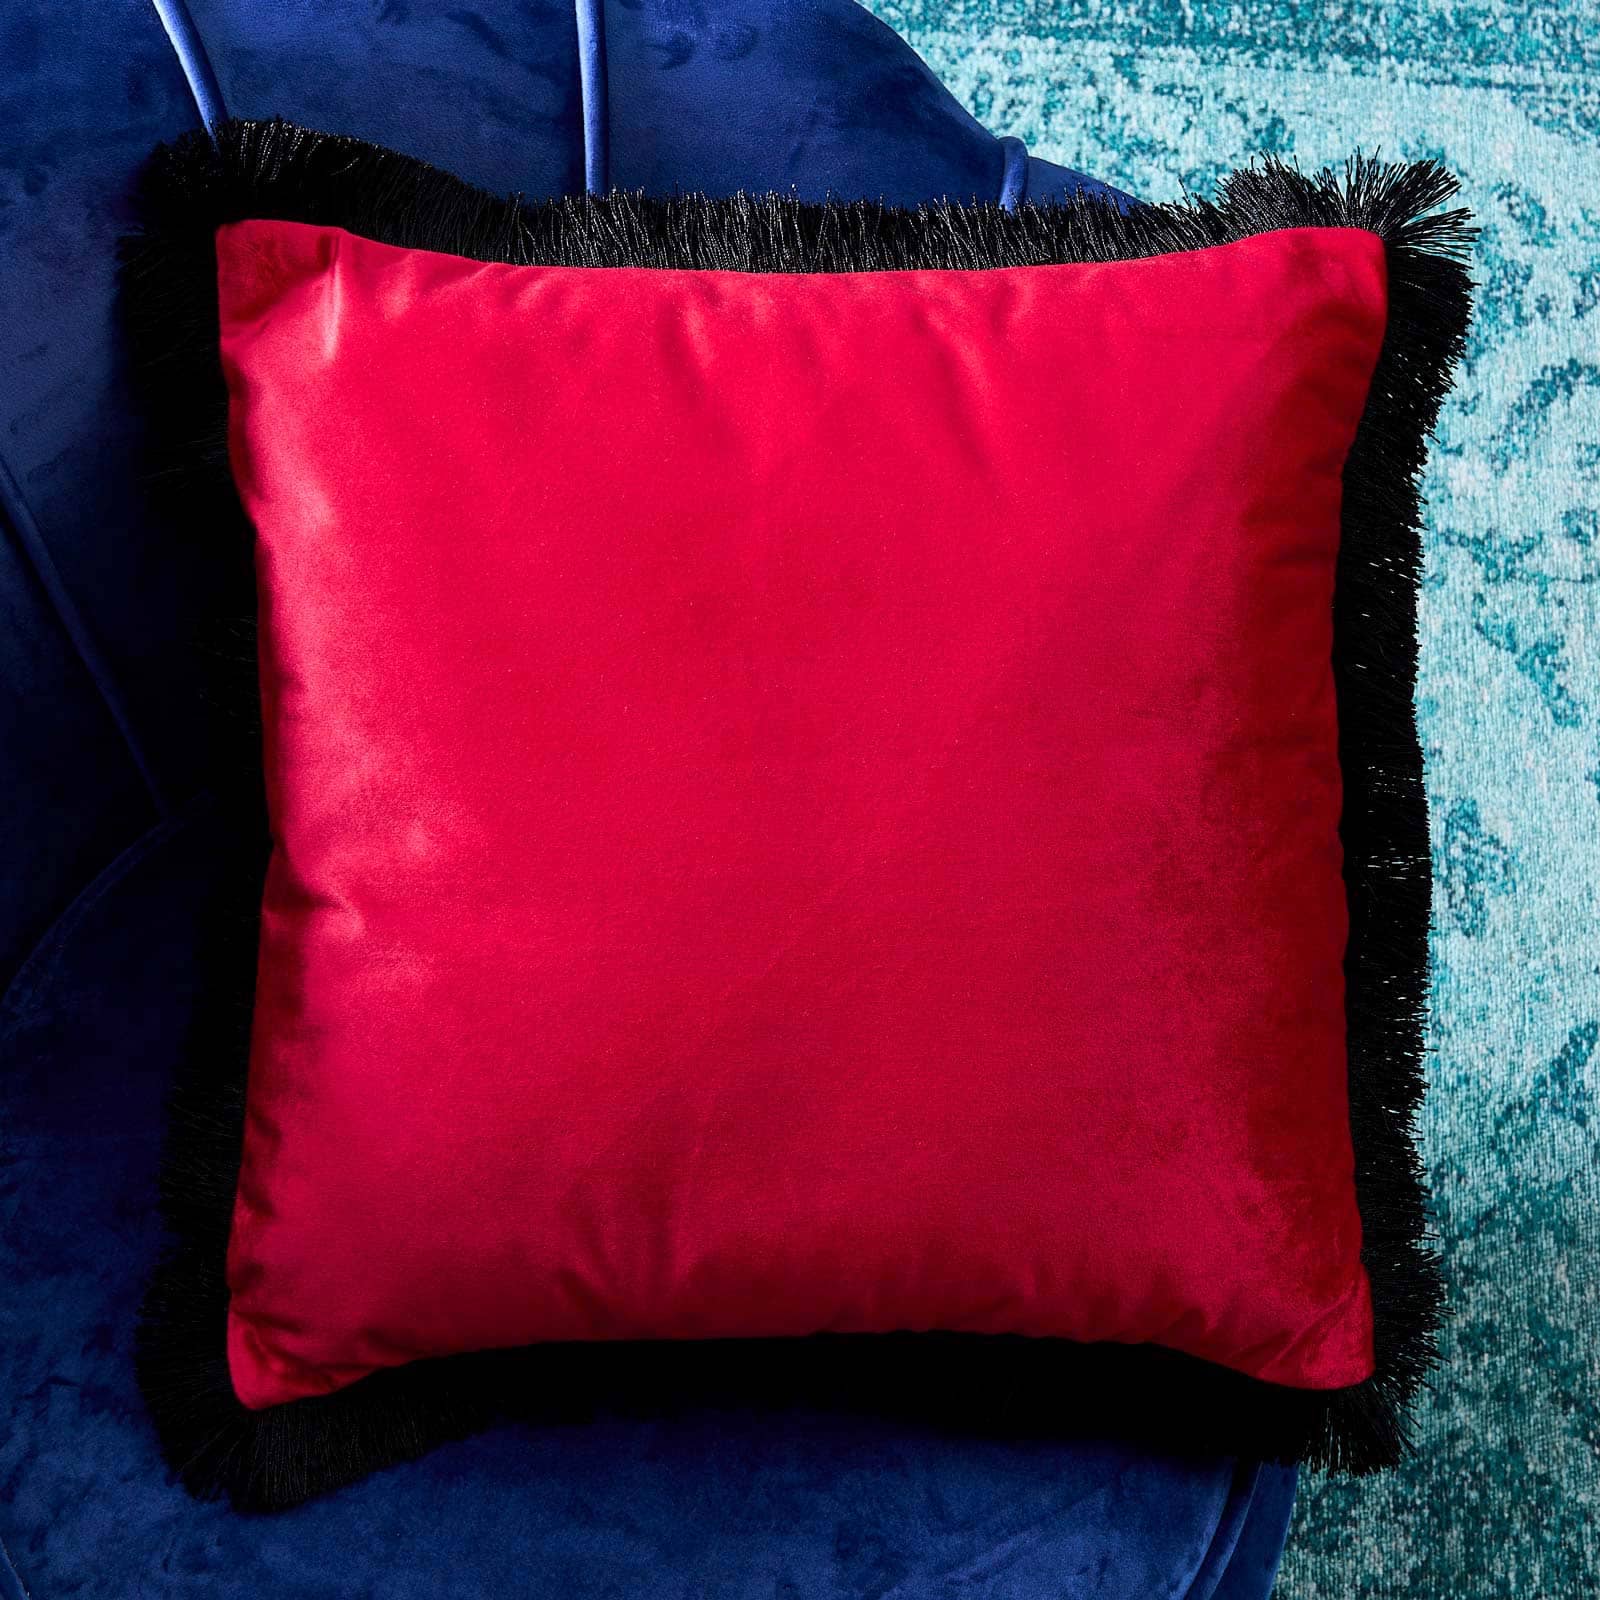 Samtkissen Velvet Cushion, pink-schwarz, Polyester, 45x45 cm, mit schwarzen Fransen, inklusive Füllung